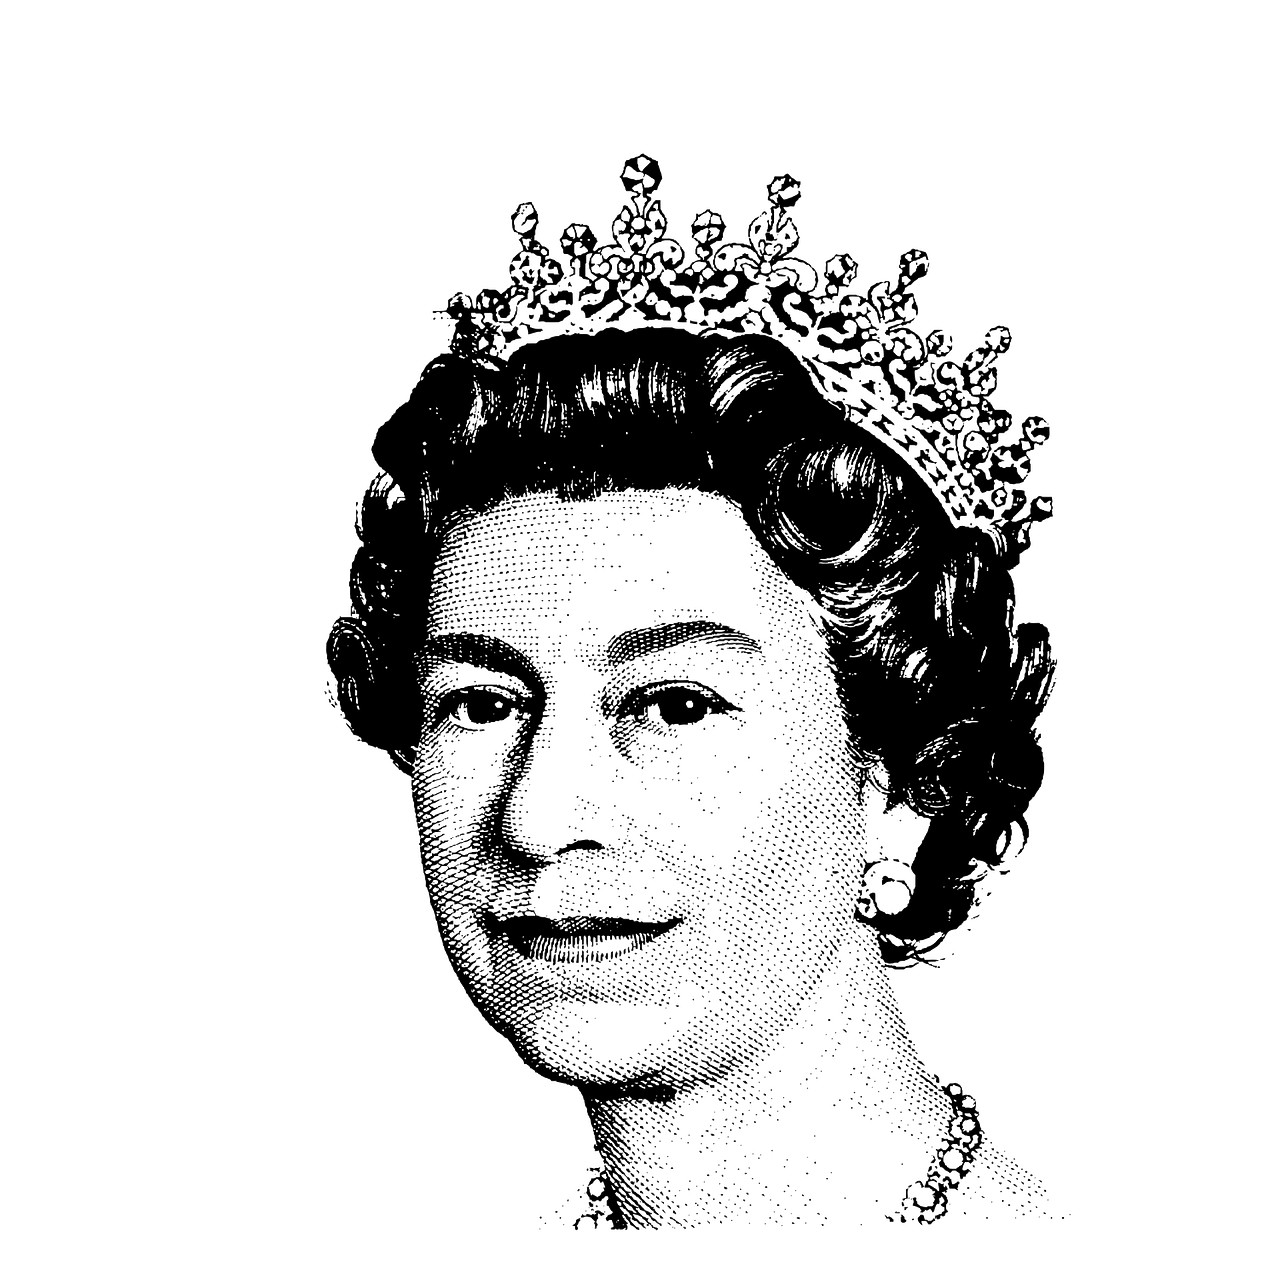 late UK monarch